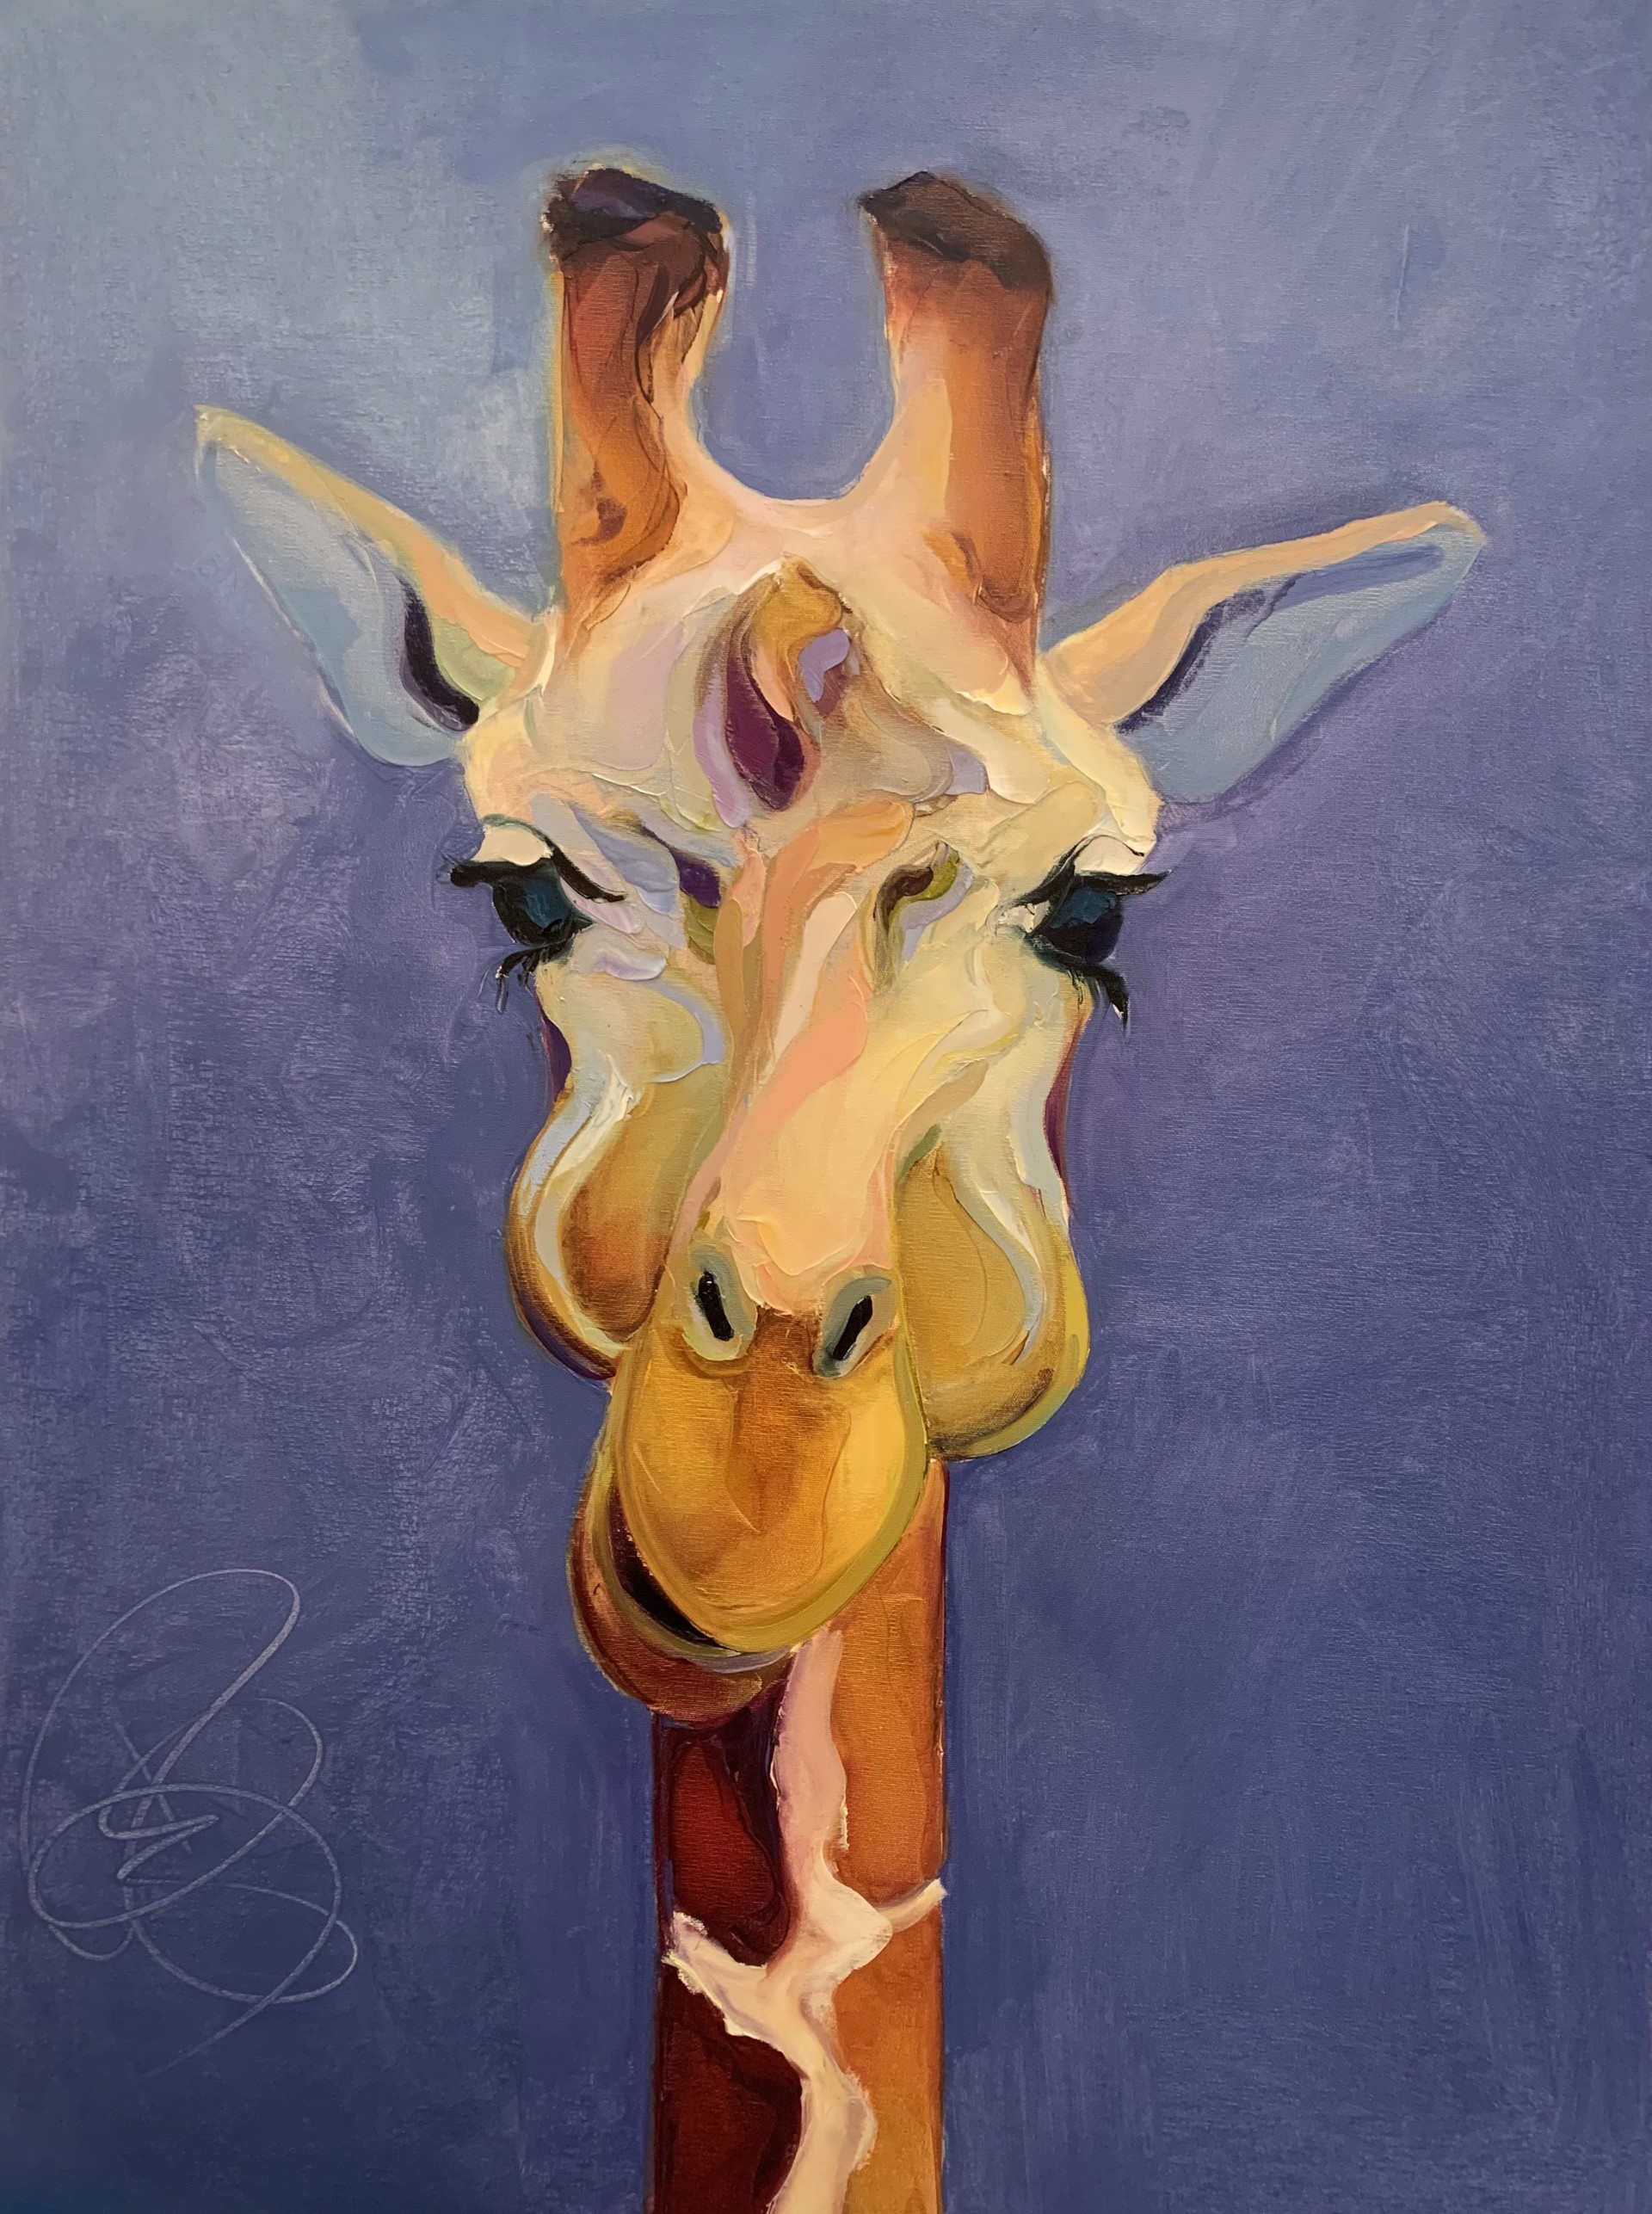 Giraffe by Bob Ransley